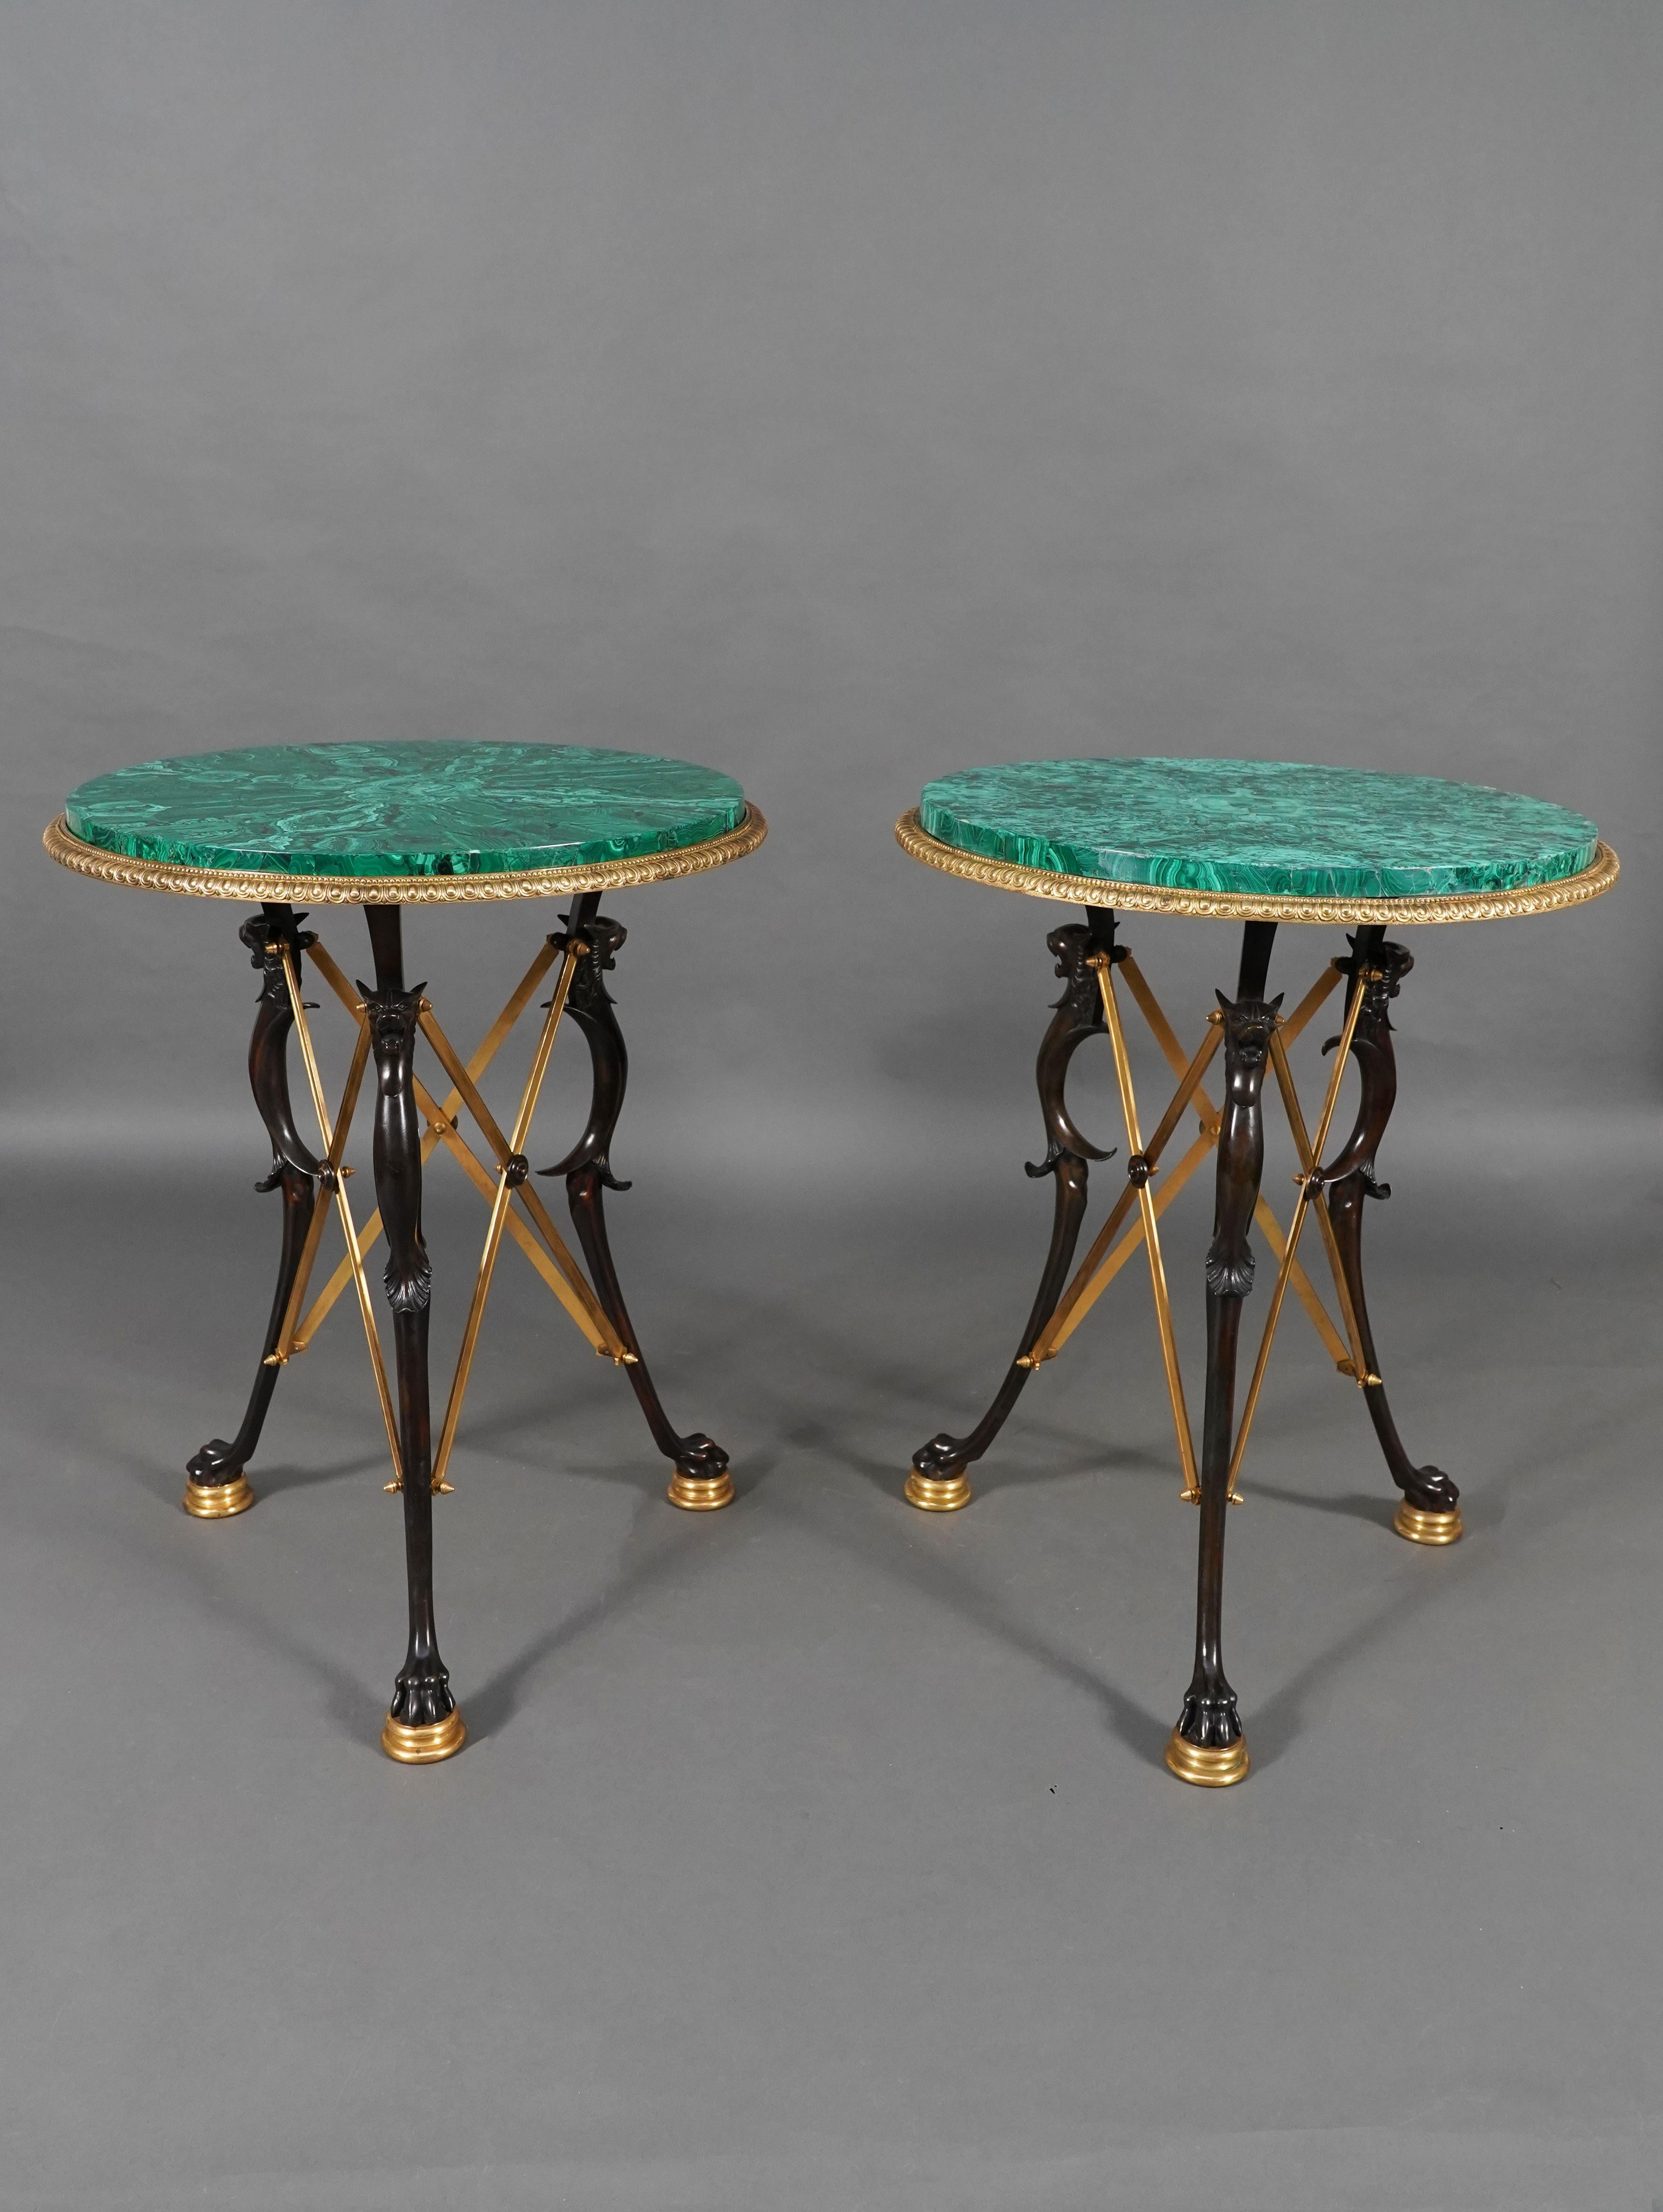 Ein ähnliches Modell wurde auf der Pariser Weltausstellung 1889 ausgestellt.
Seltenes Paar runder Tische aus patinierter und vergoldeter Bronze mit einer mit Malachit furnierten Platte, die mit Bronzebeschlägen mit Ovum und Perlen verziert ist. Sie